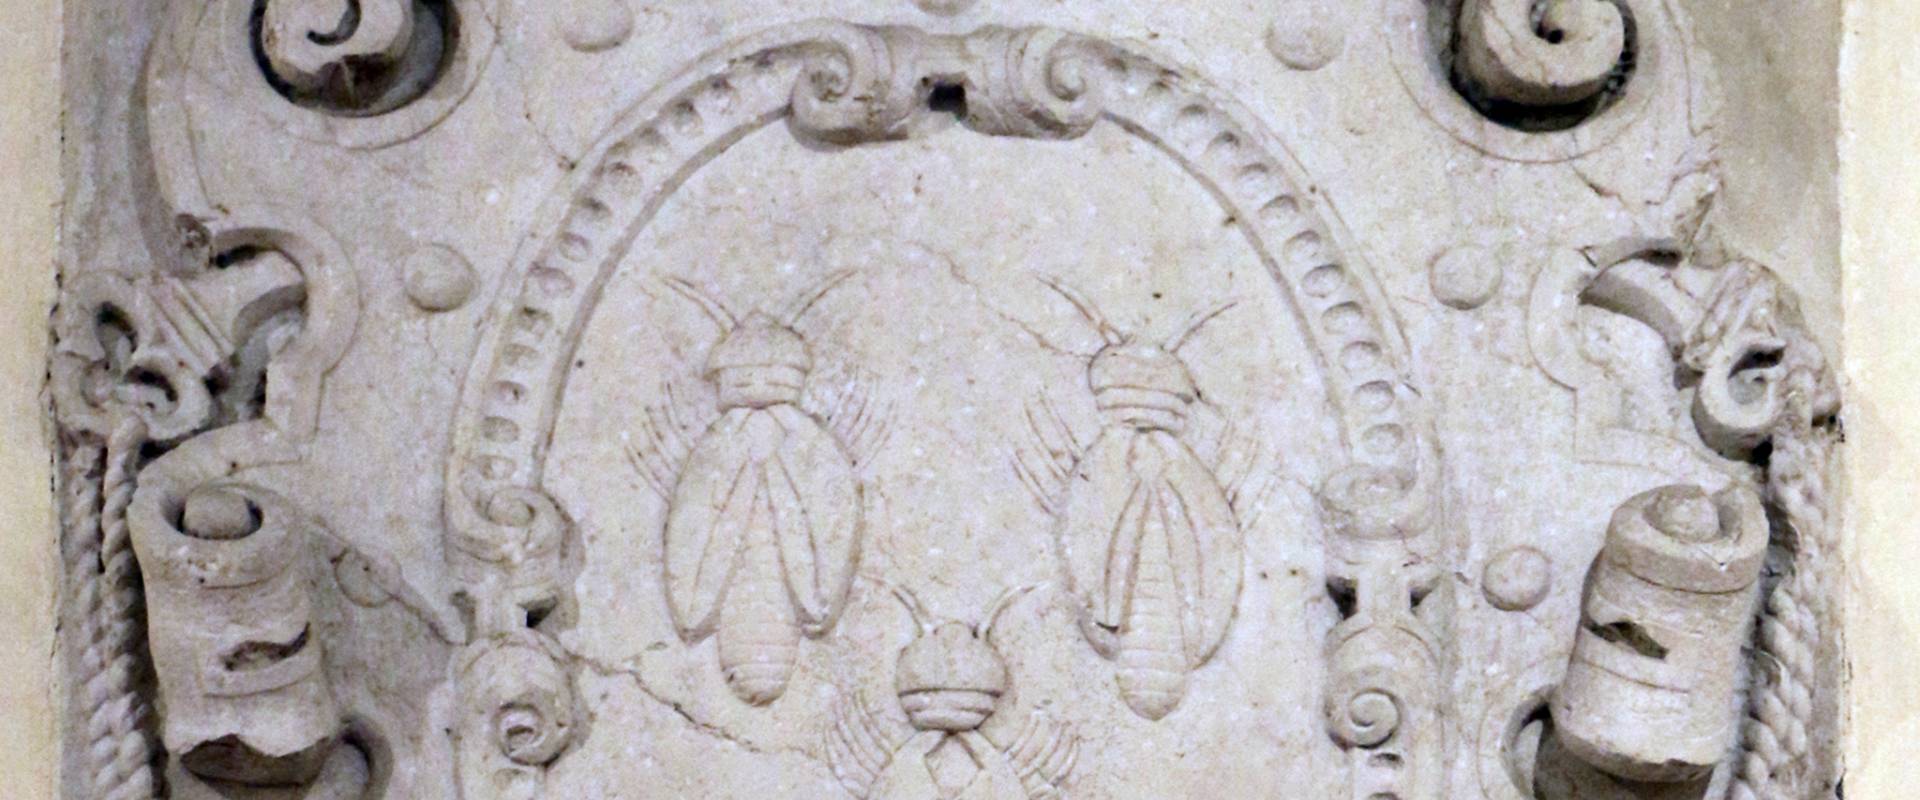 Stemma di urbano VIII barberini in pietra d'istria, dalla porta catena, xvii secolo photo by Sailko